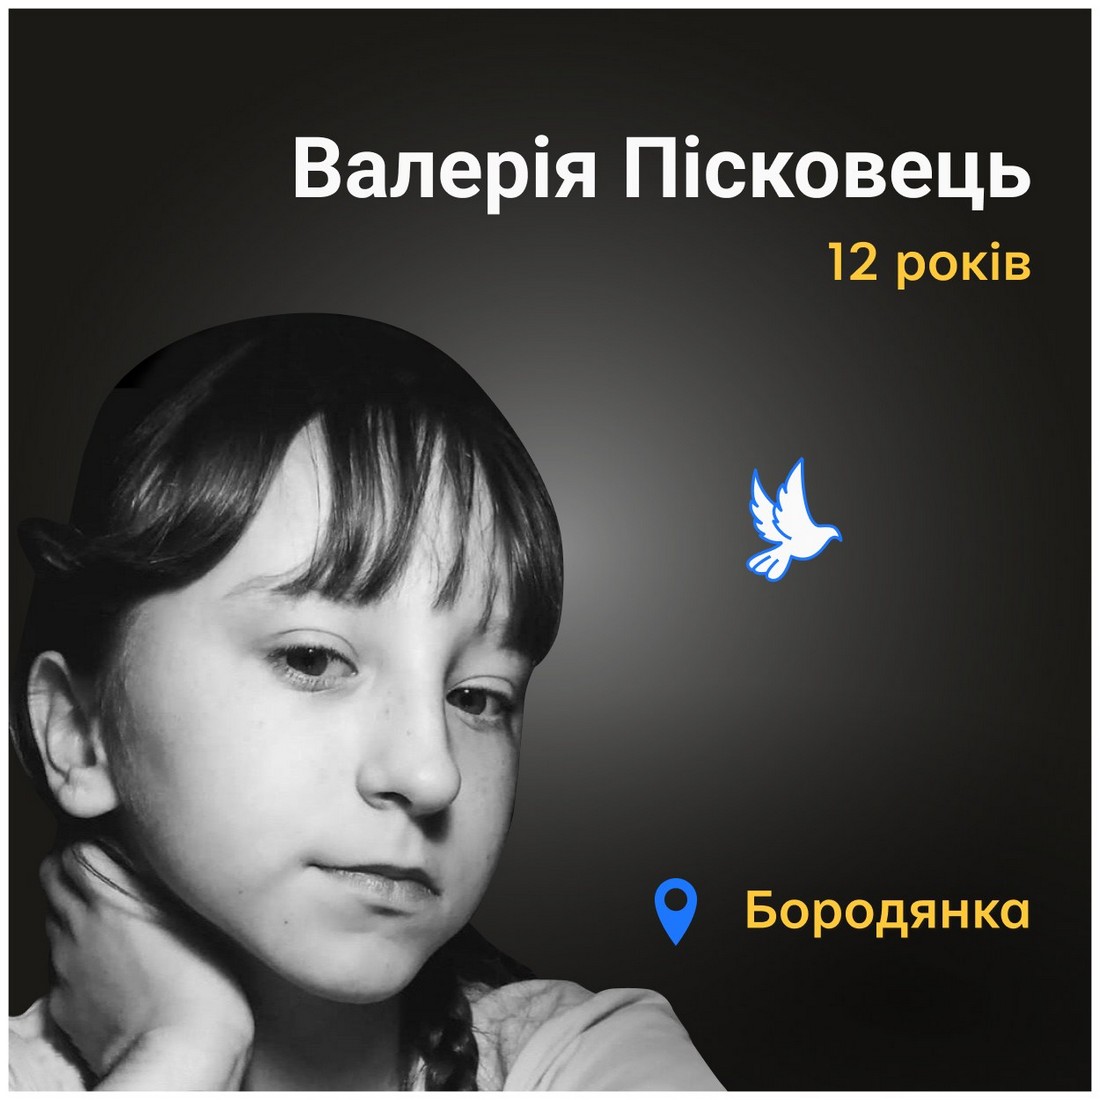 Меморіал: вбиті росією. Валерія Пісковець, 12 років, Київщина, березень